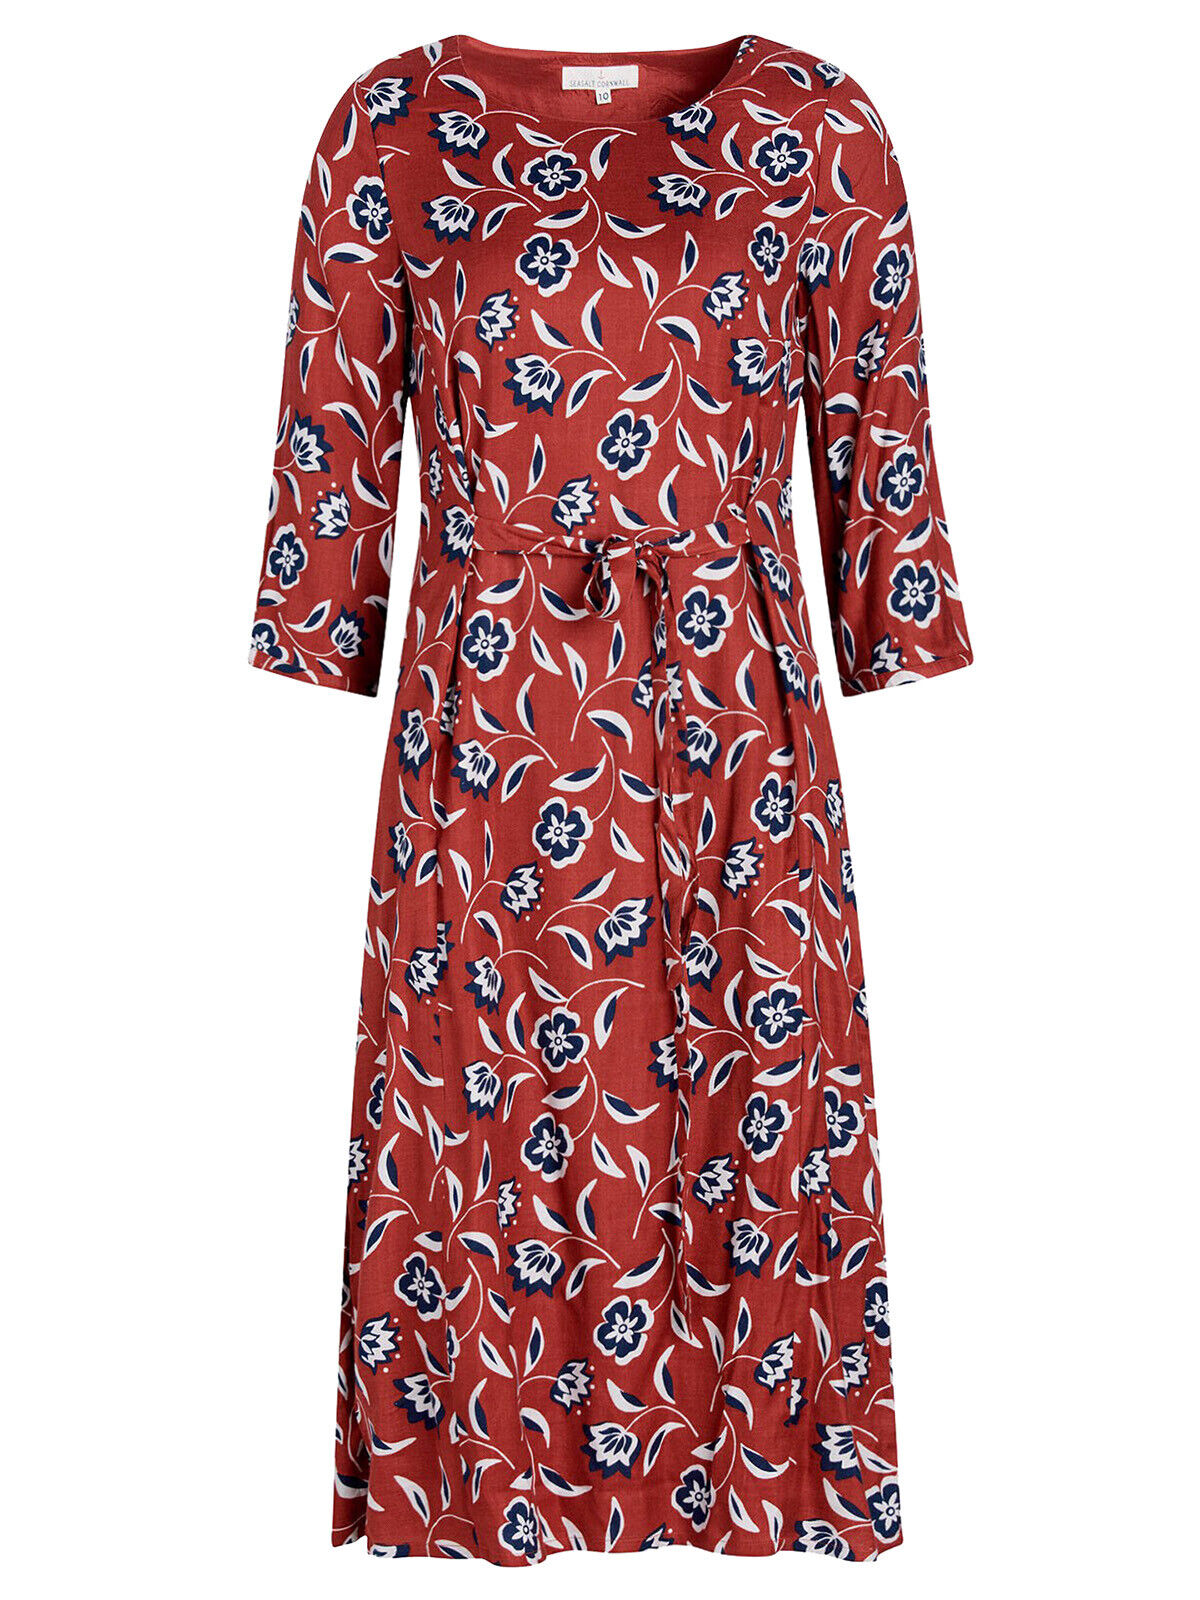 EX Seasalt Red Painterly Bloom Masala Wild Garden Dress Sizes 16 or 18 RRP £75